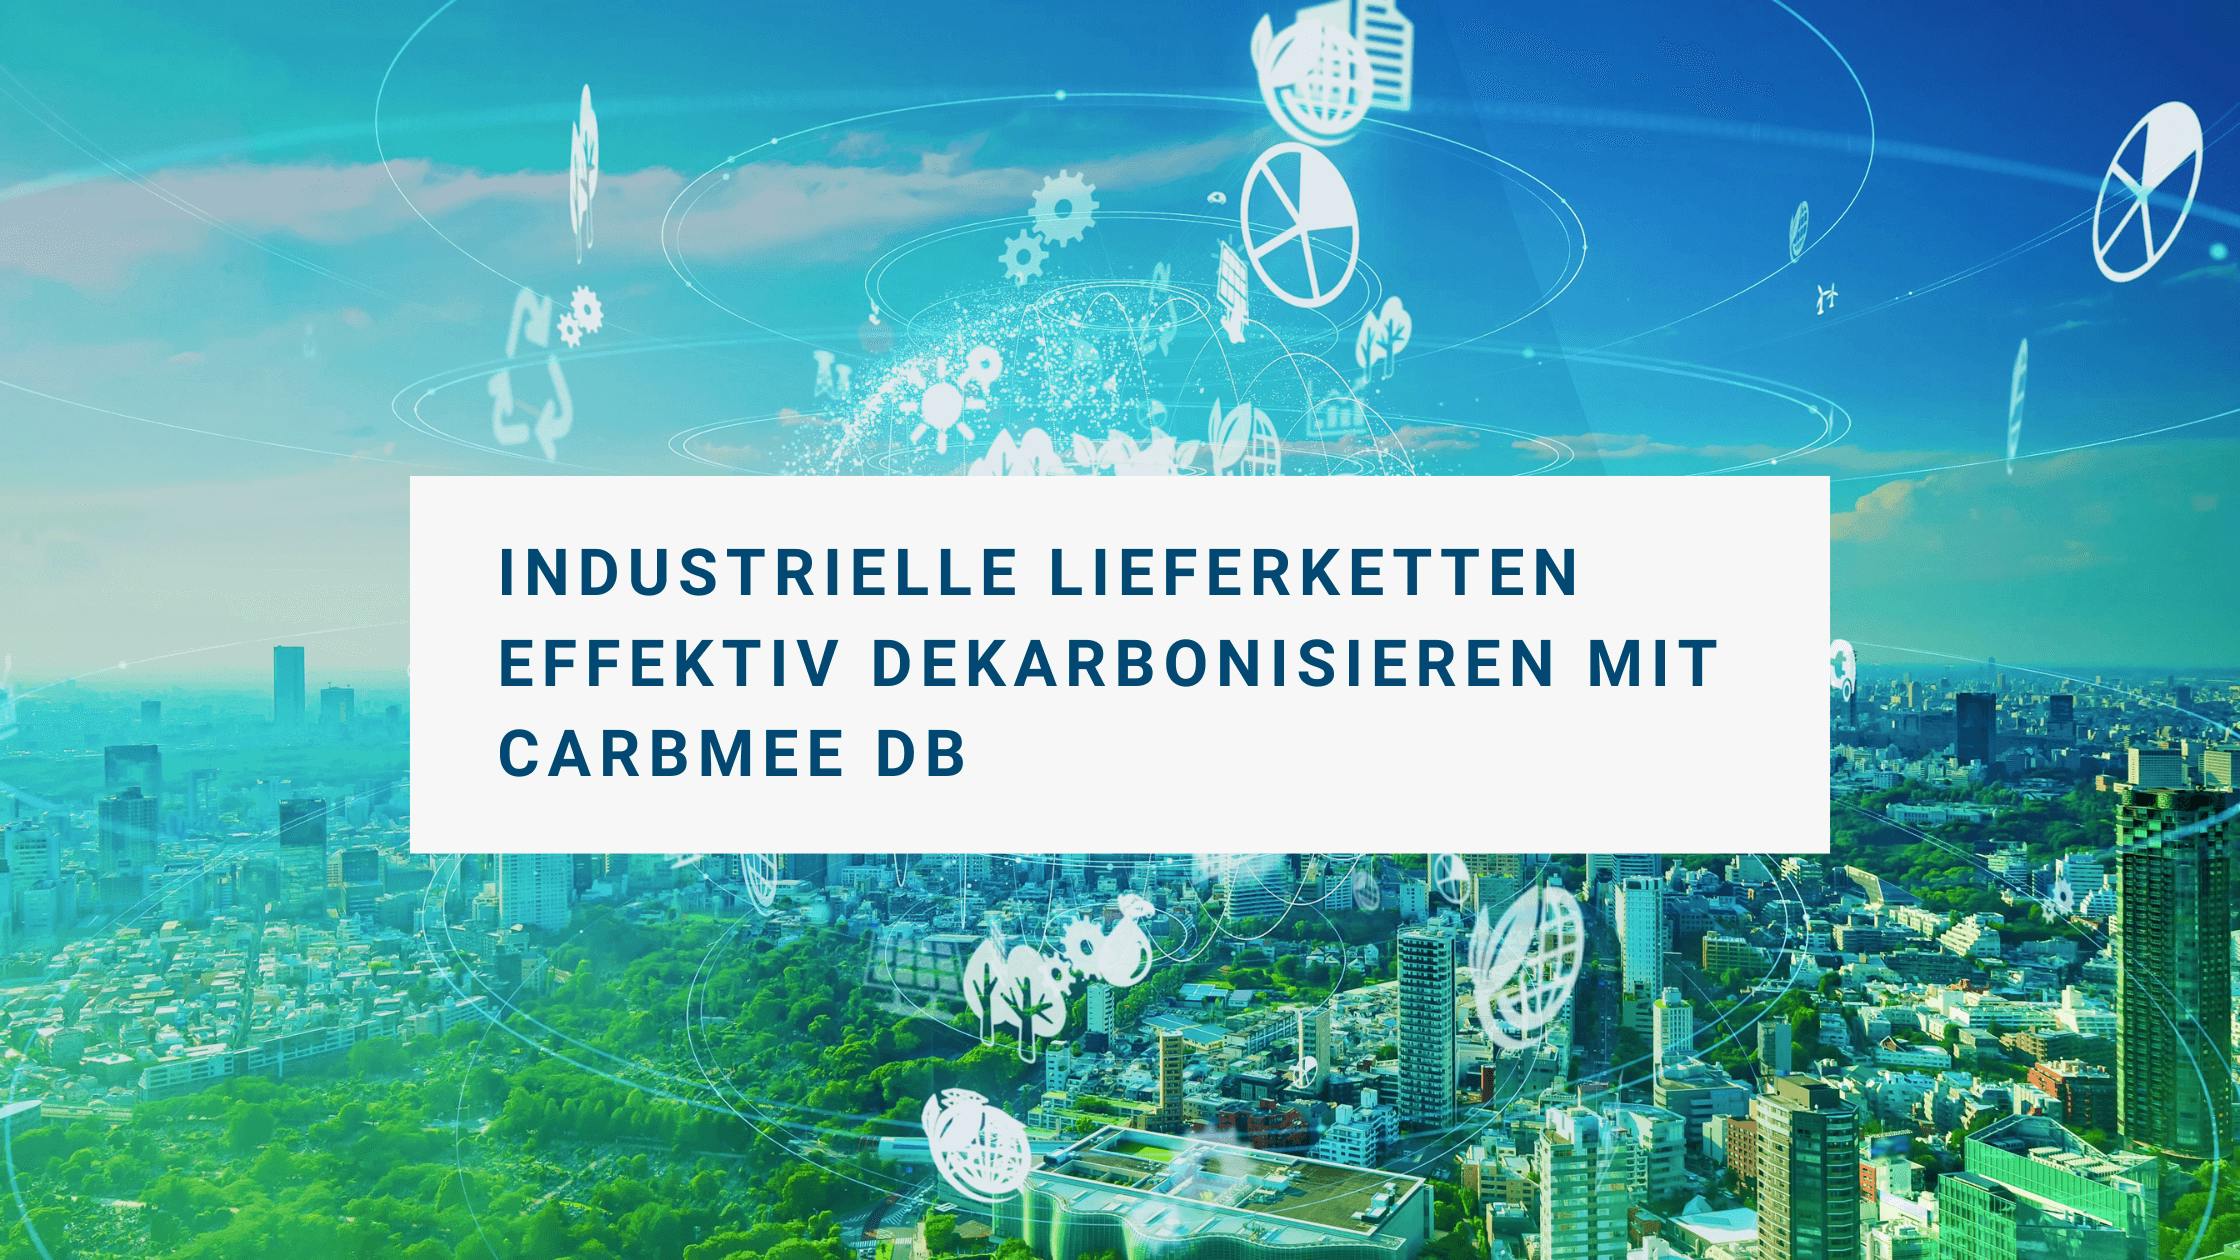 Industrielle Lieferketten effektiv dekarbonisieren mit der carbmee Datenbank (carbmee DB)